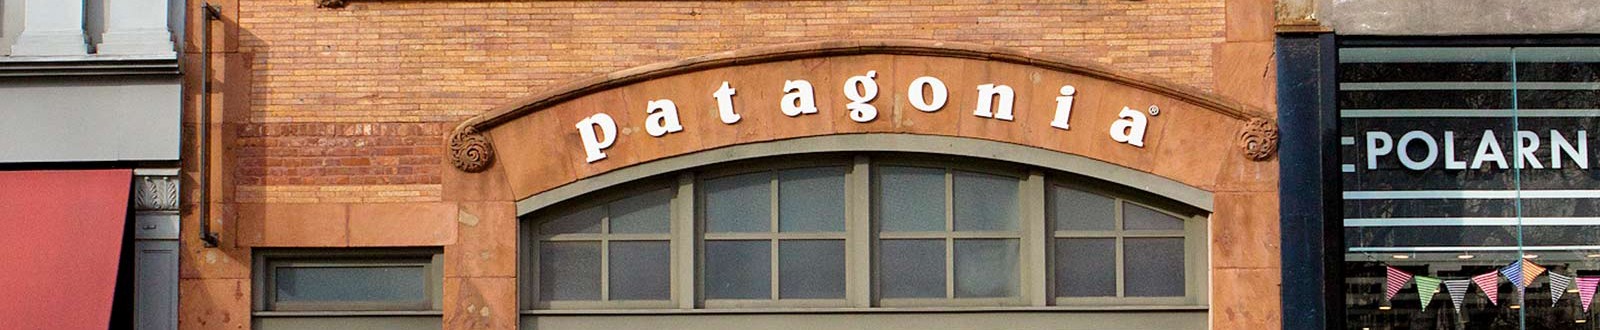 BANQUITO PLEGABLE WATERDOG - Patagonia Showroom